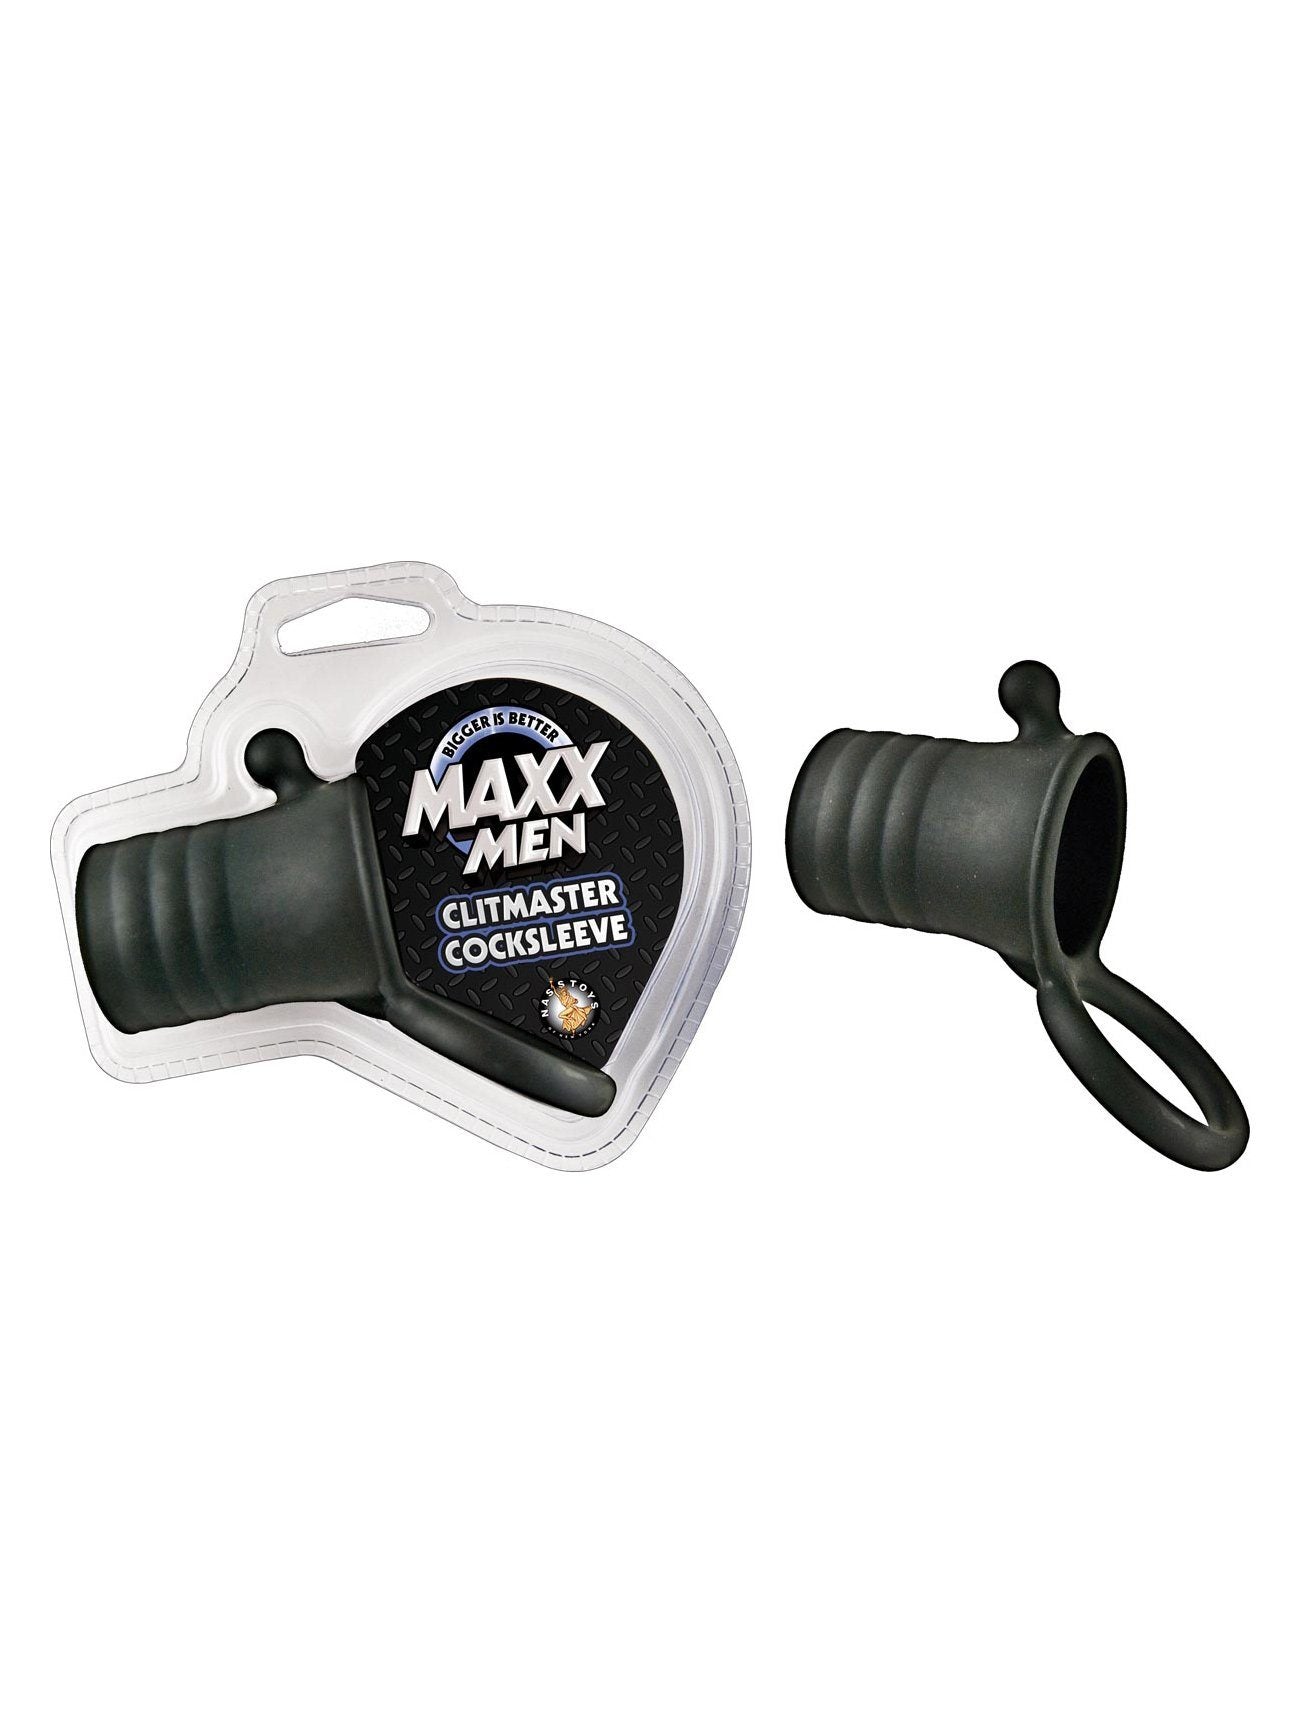 Maxx Men Clitmaster Cock Ring & Sleeve More Toys NassToys Black